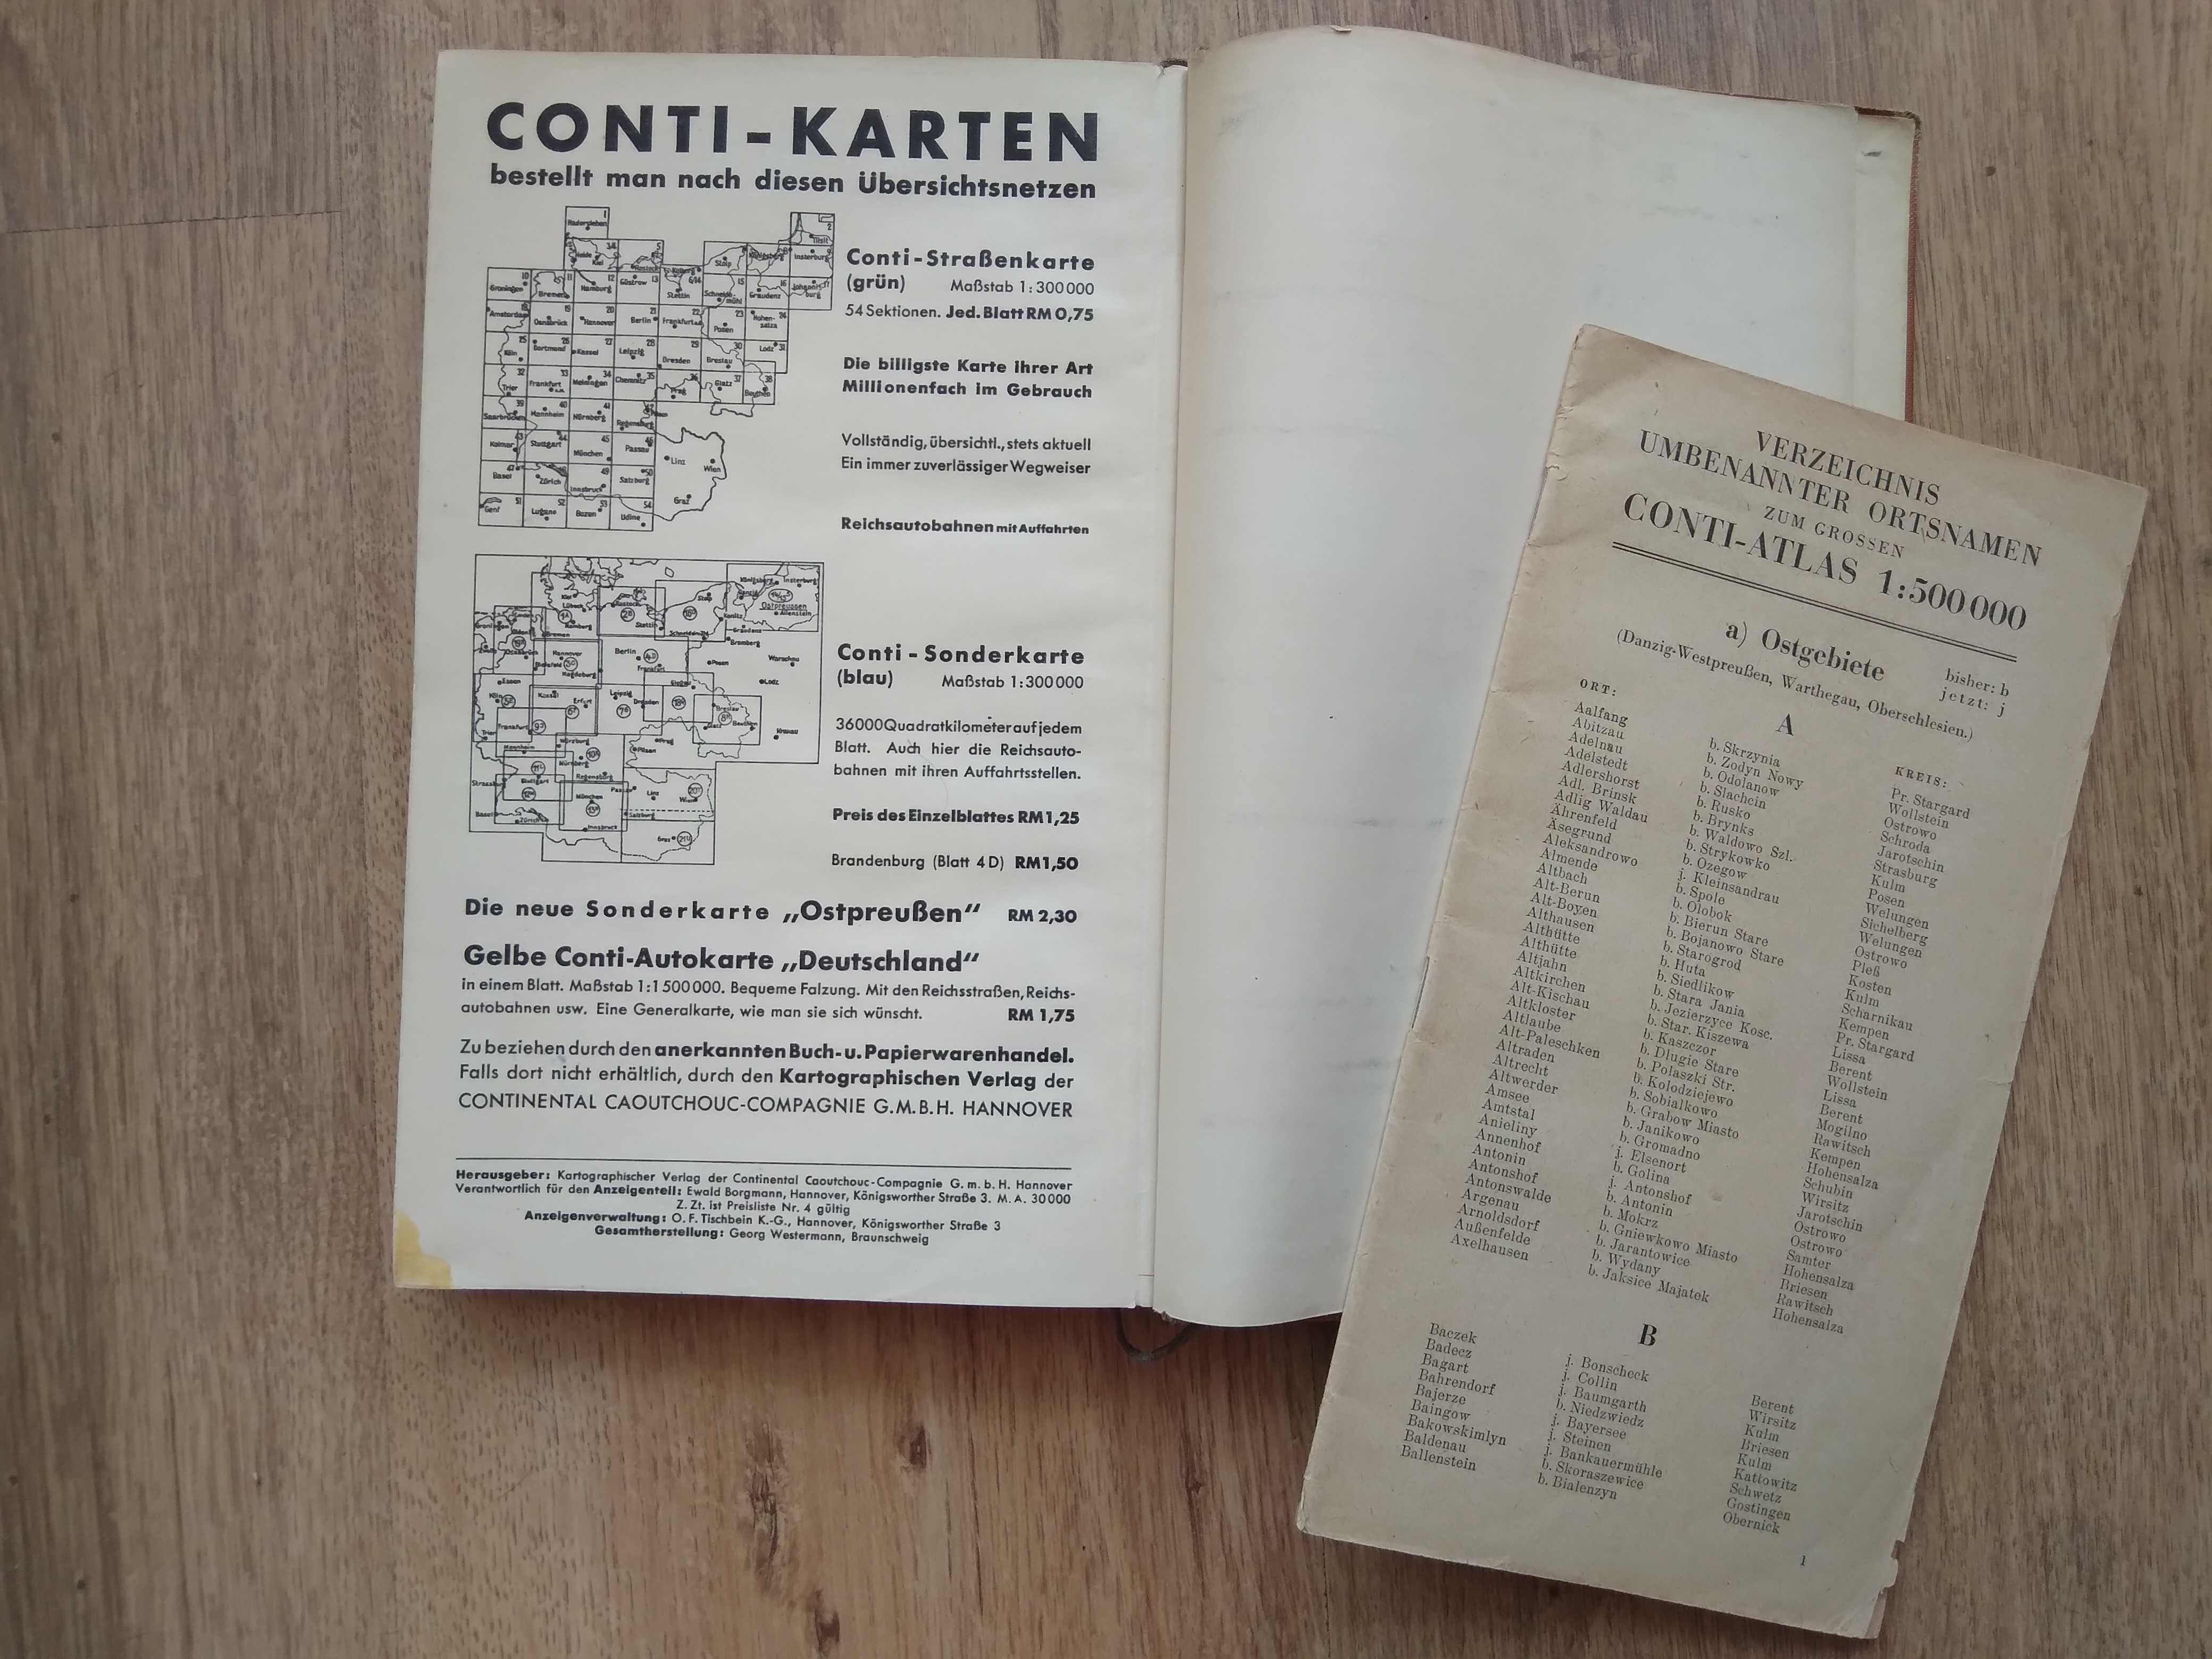 Conti atlas rutier vechi harti Reich Germania WW2 DRGM 1938